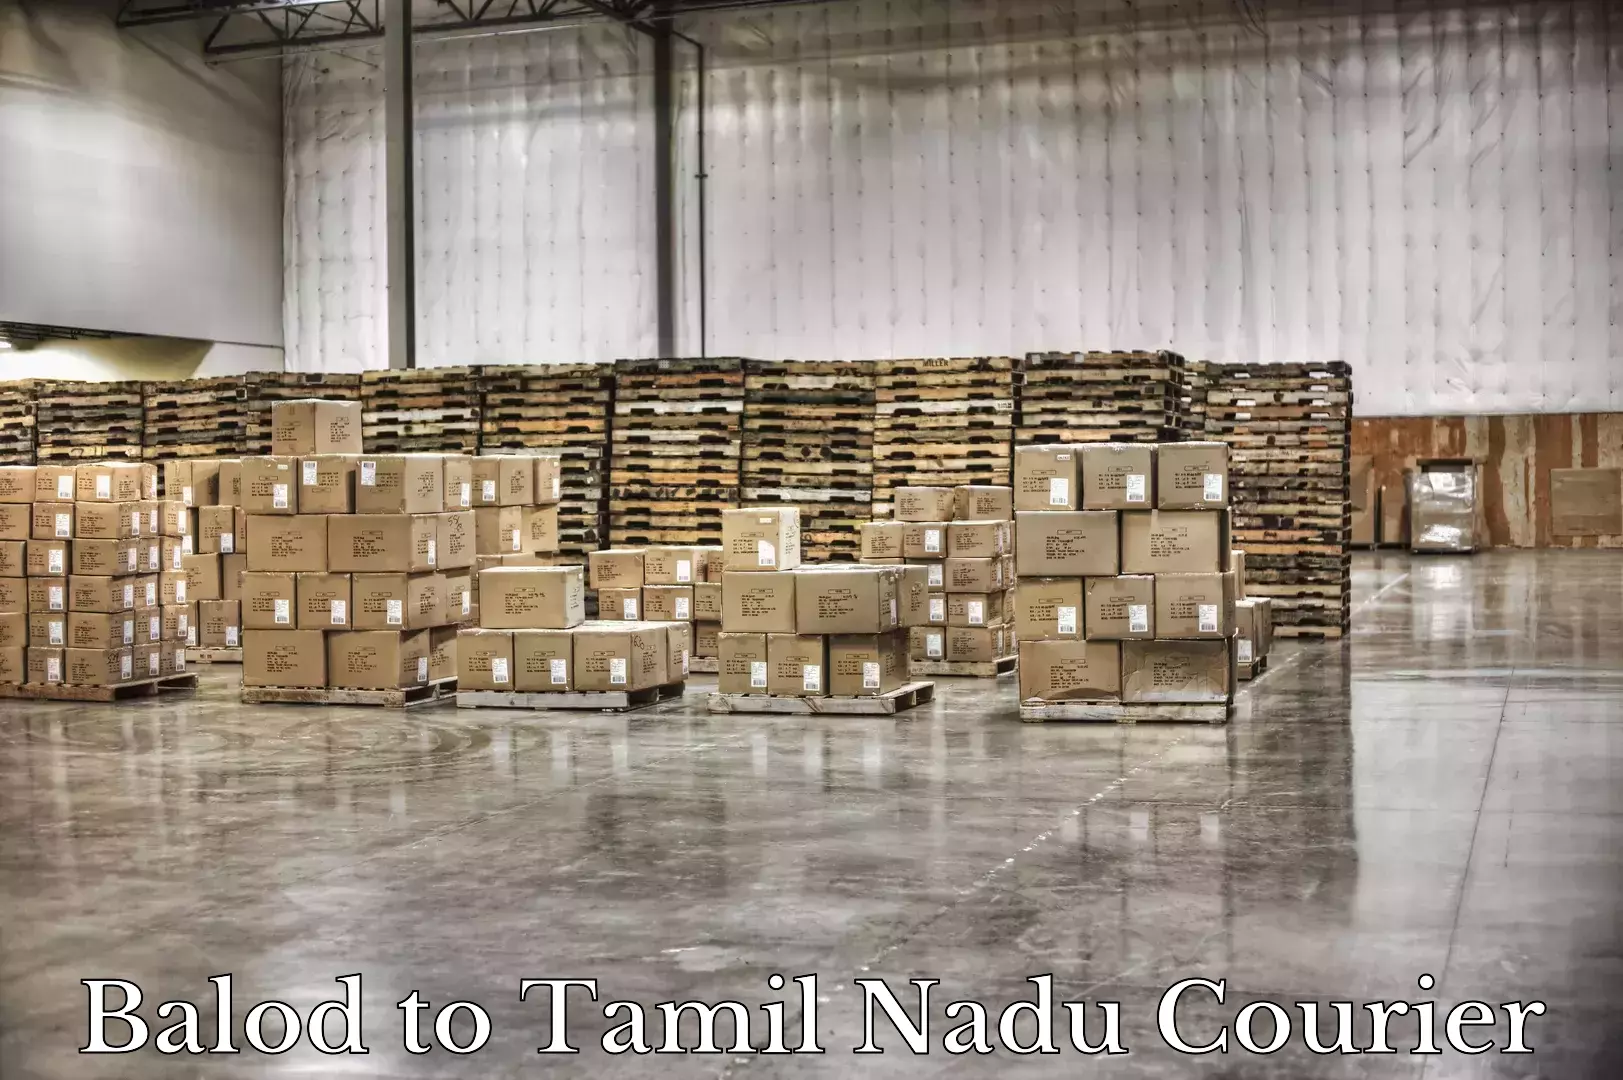 Door-to-door baggage service Balod to Tamil Nadu